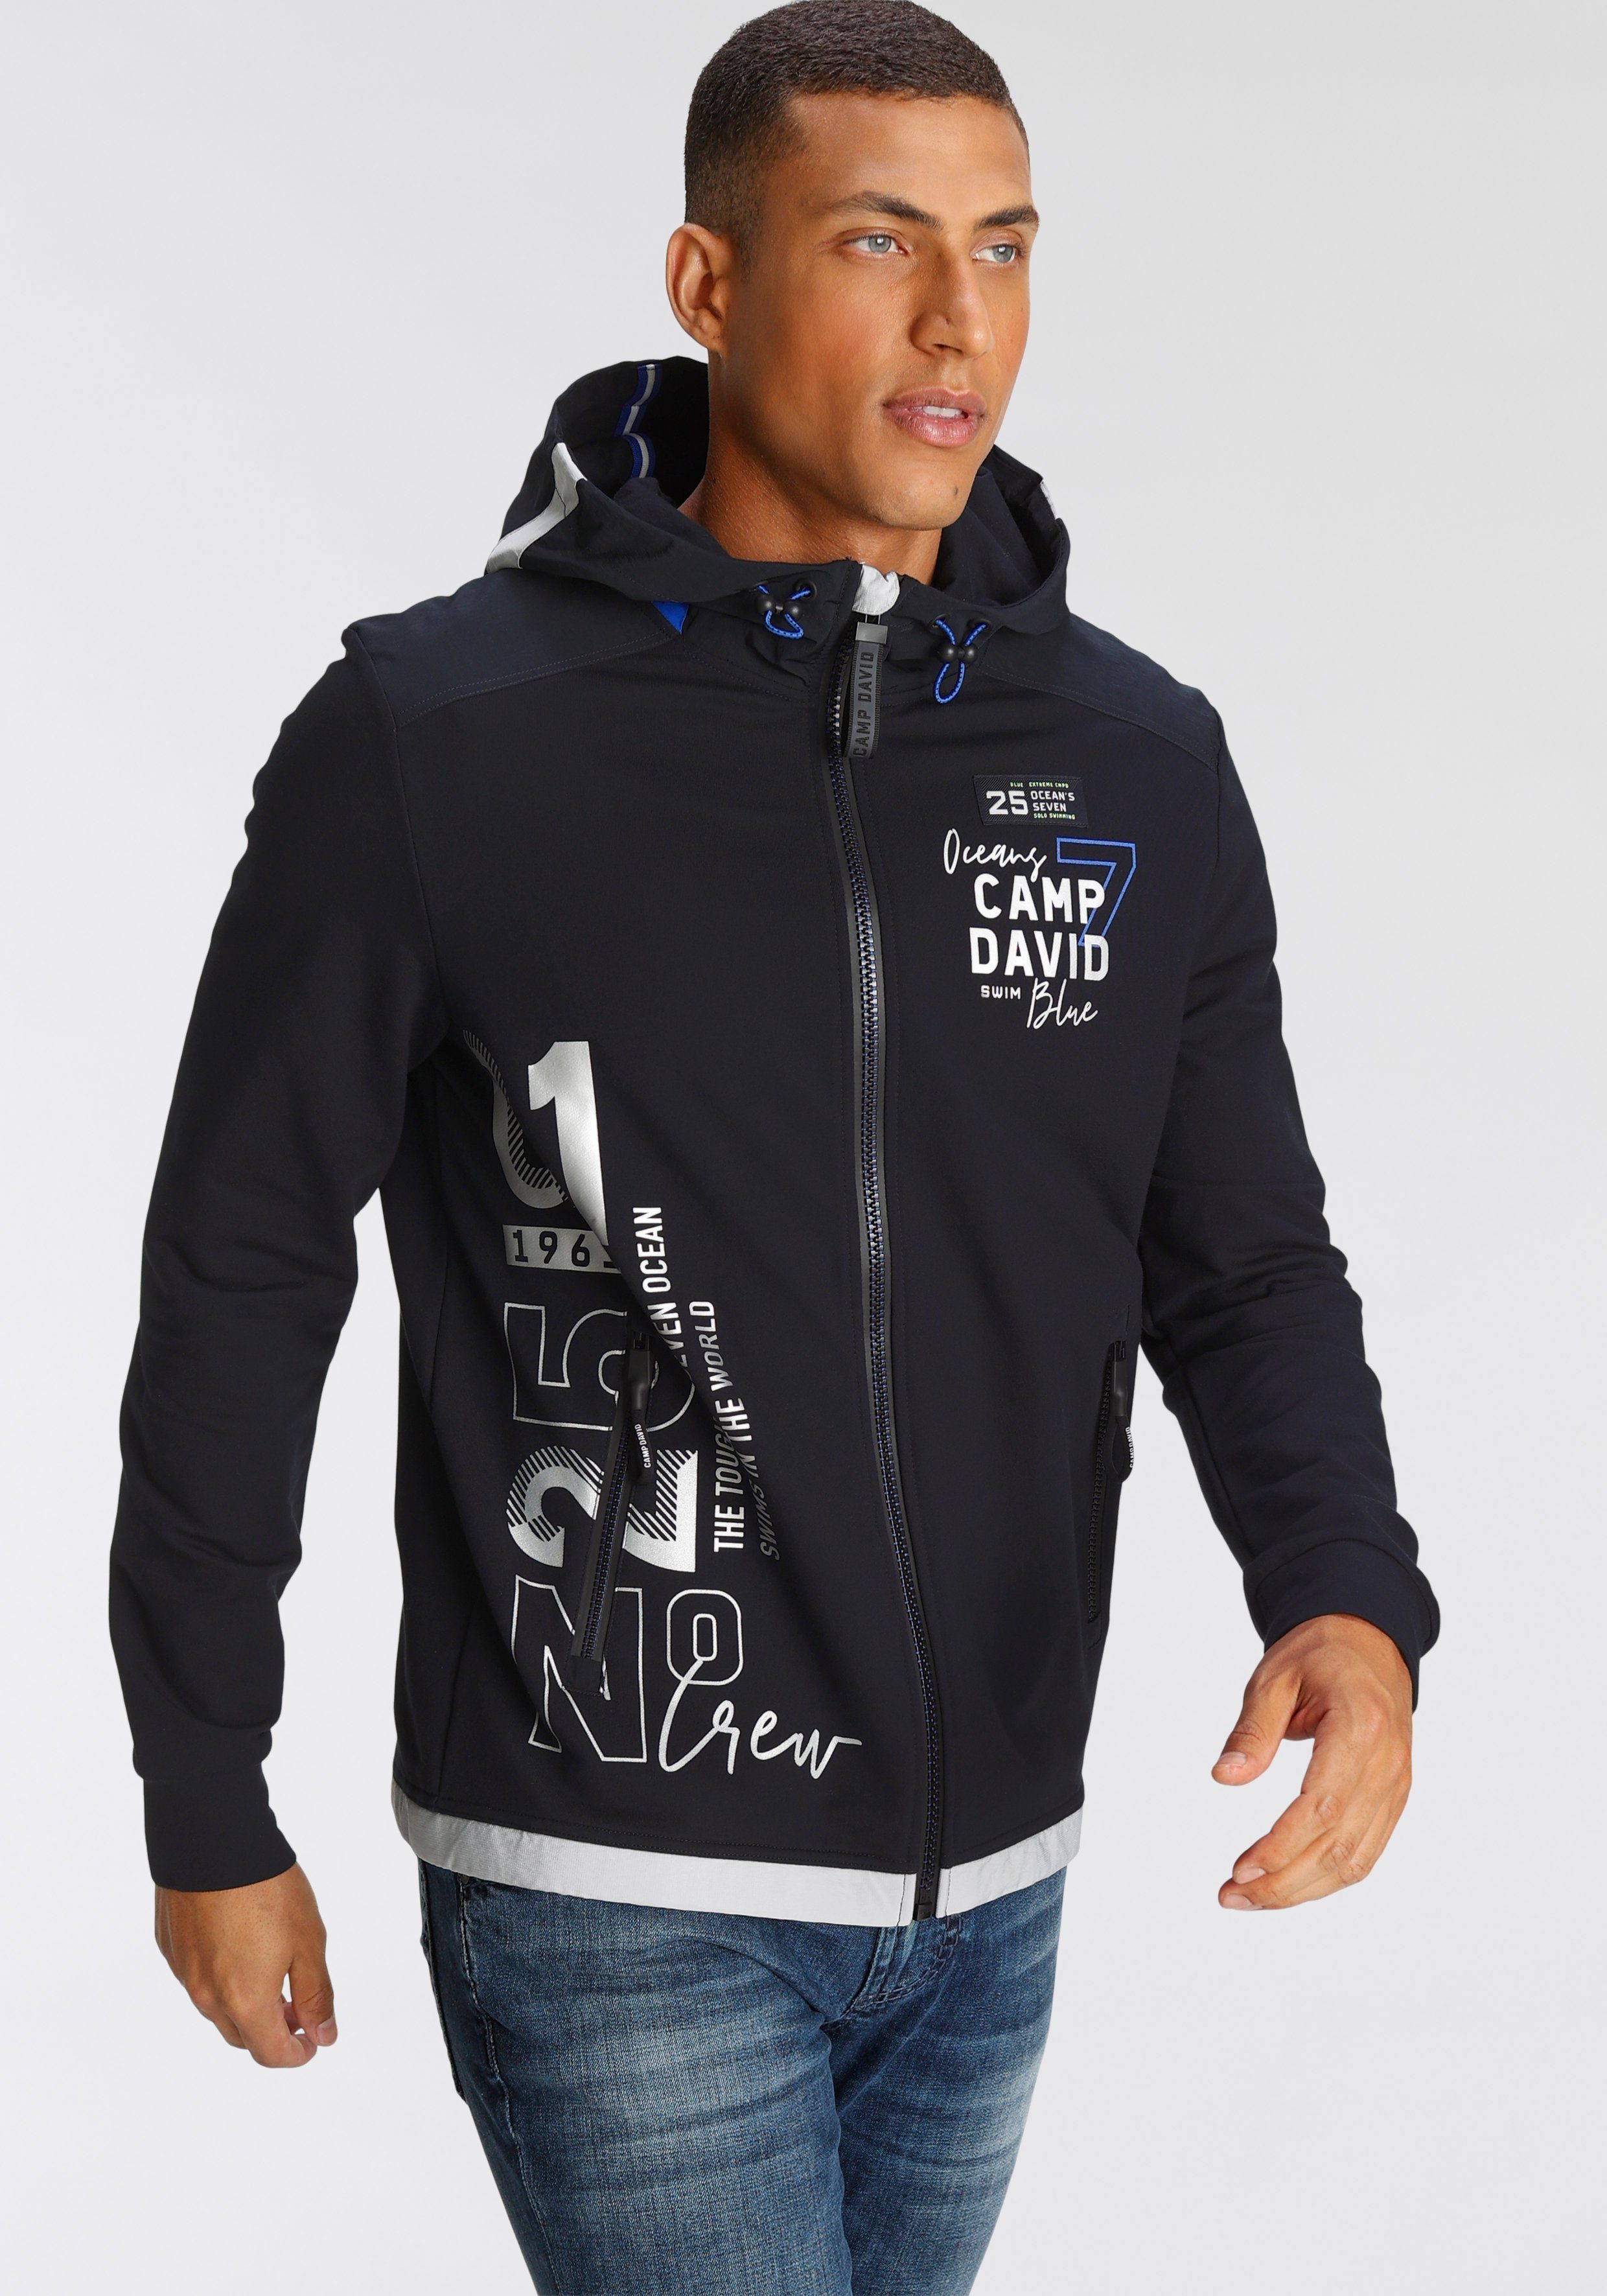 Günstiges Camp David Sweatshirt online kaufen | OTTO